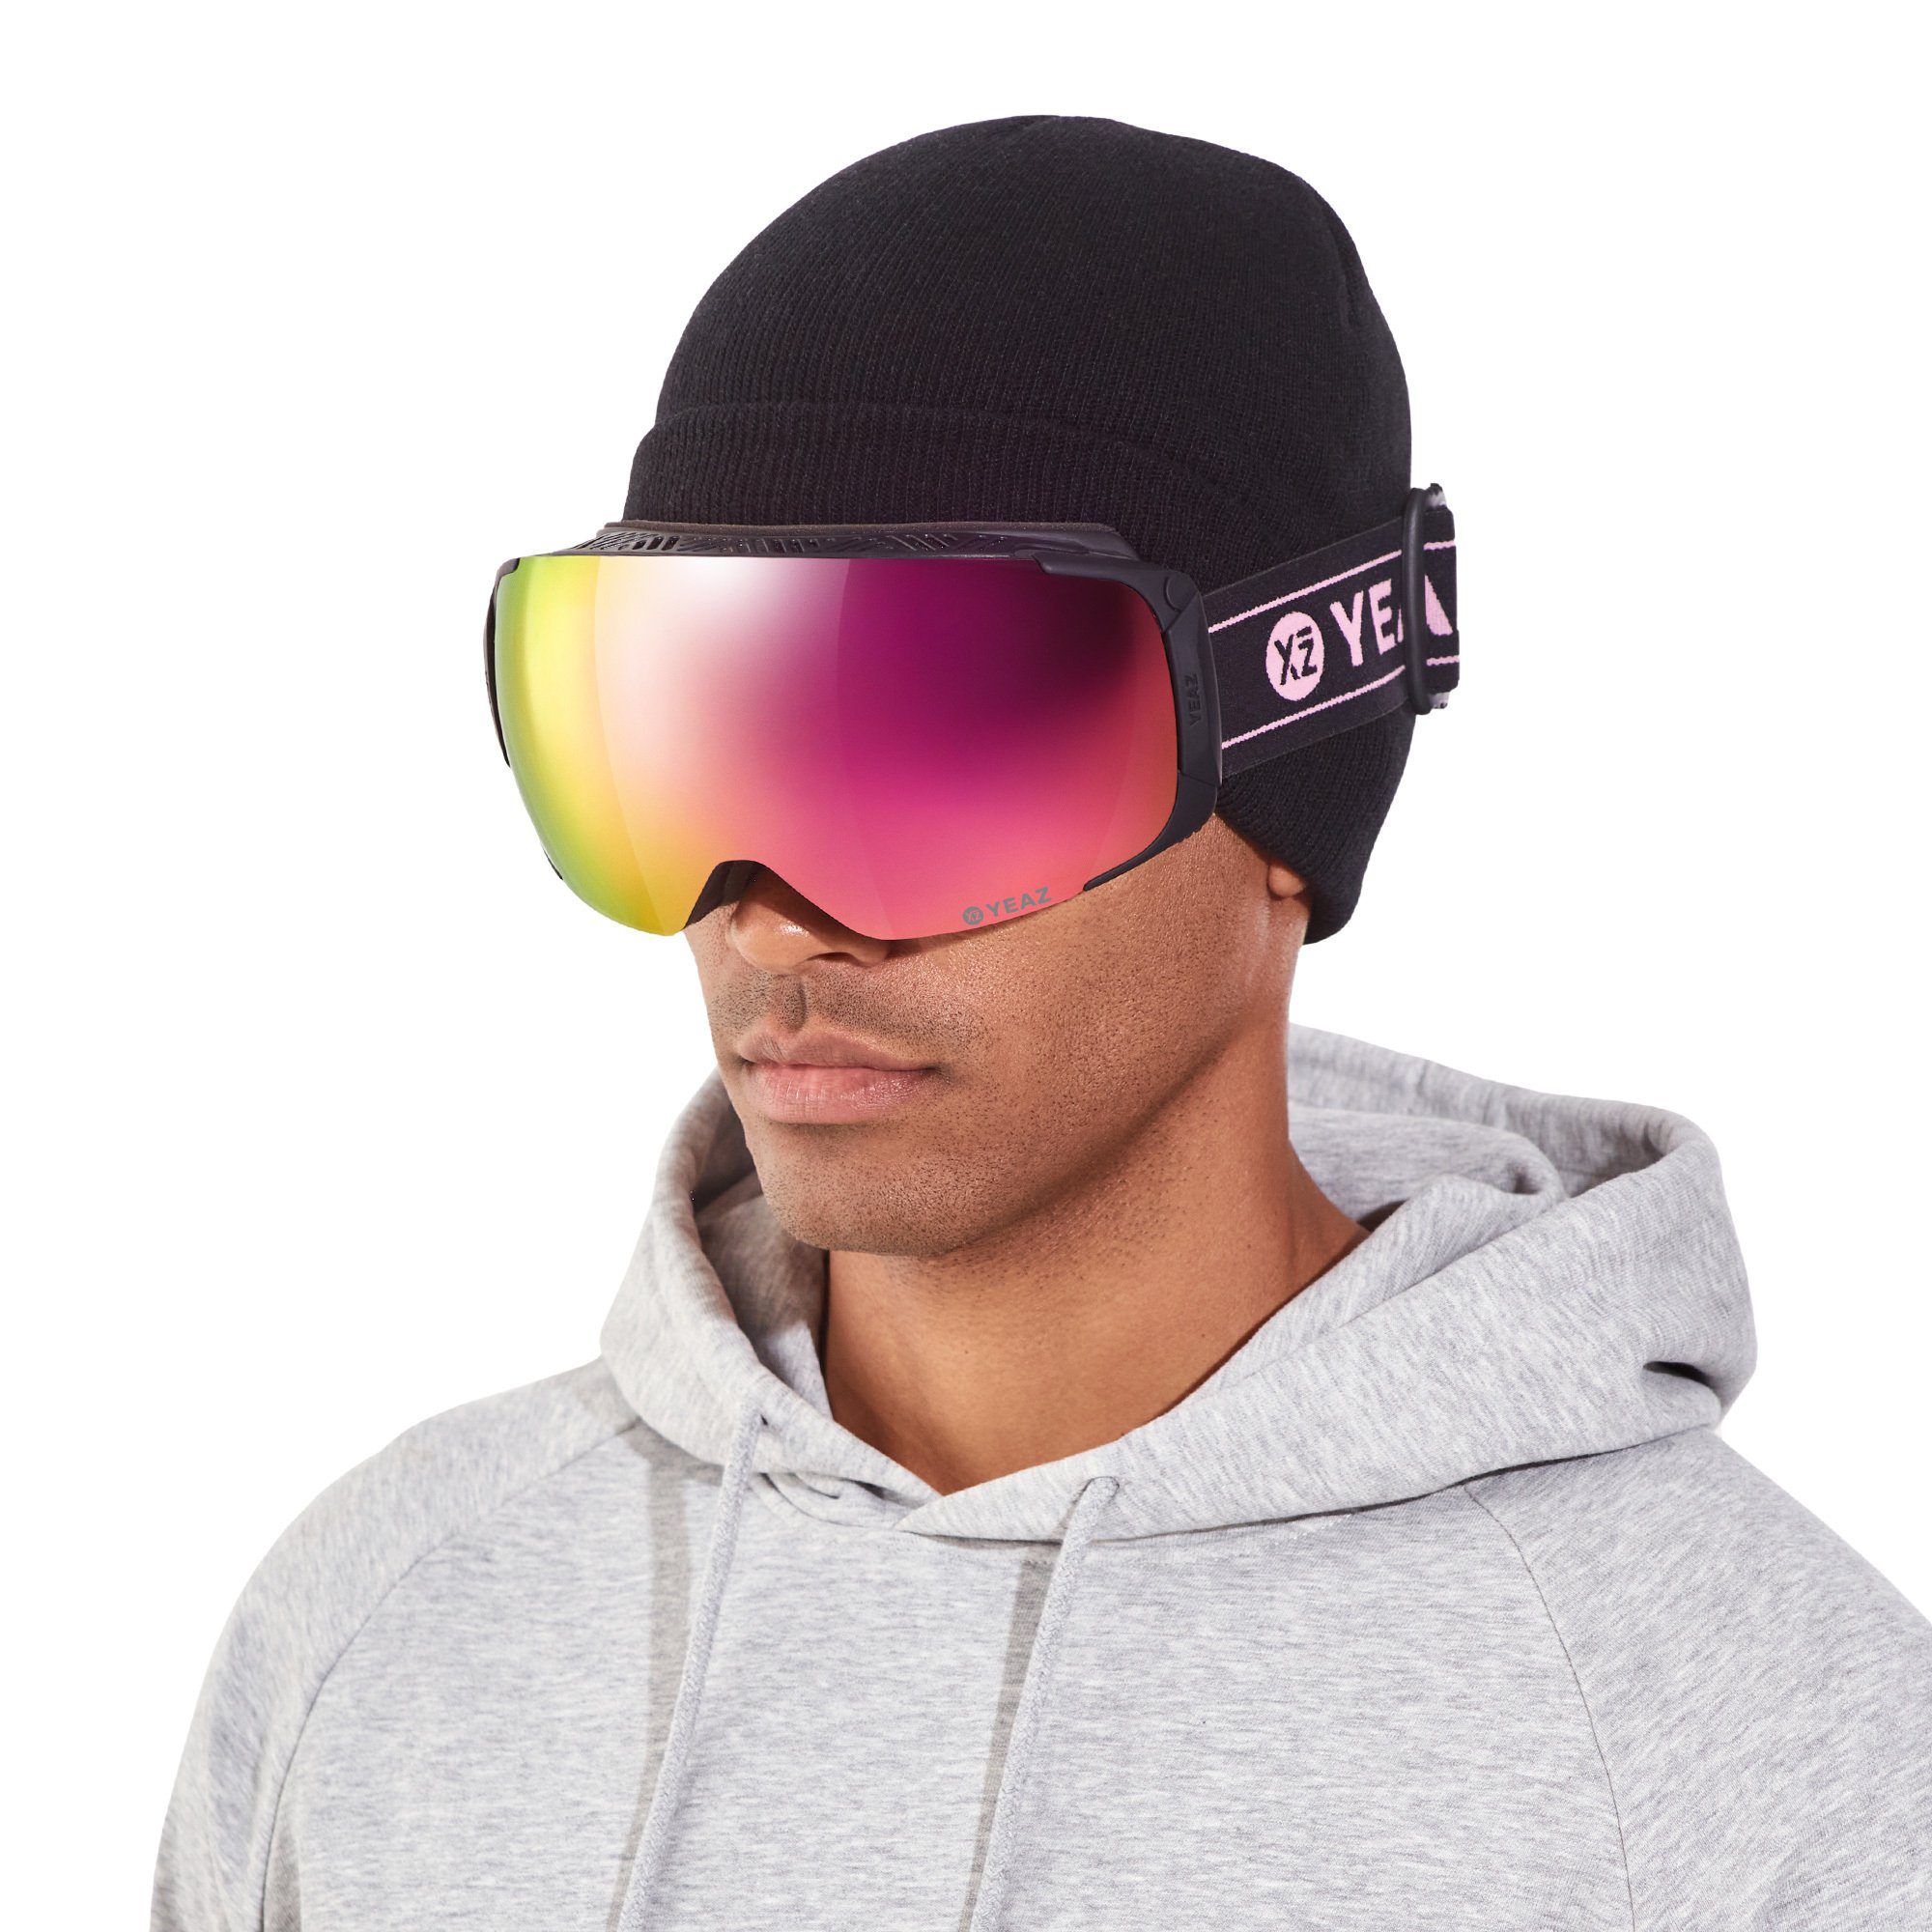 YEAZ Skibrille TWEAK-X ski- Premium-Ski- für Erwachsene snowboard-brille, und und Snowboardbrille und Jugendliche